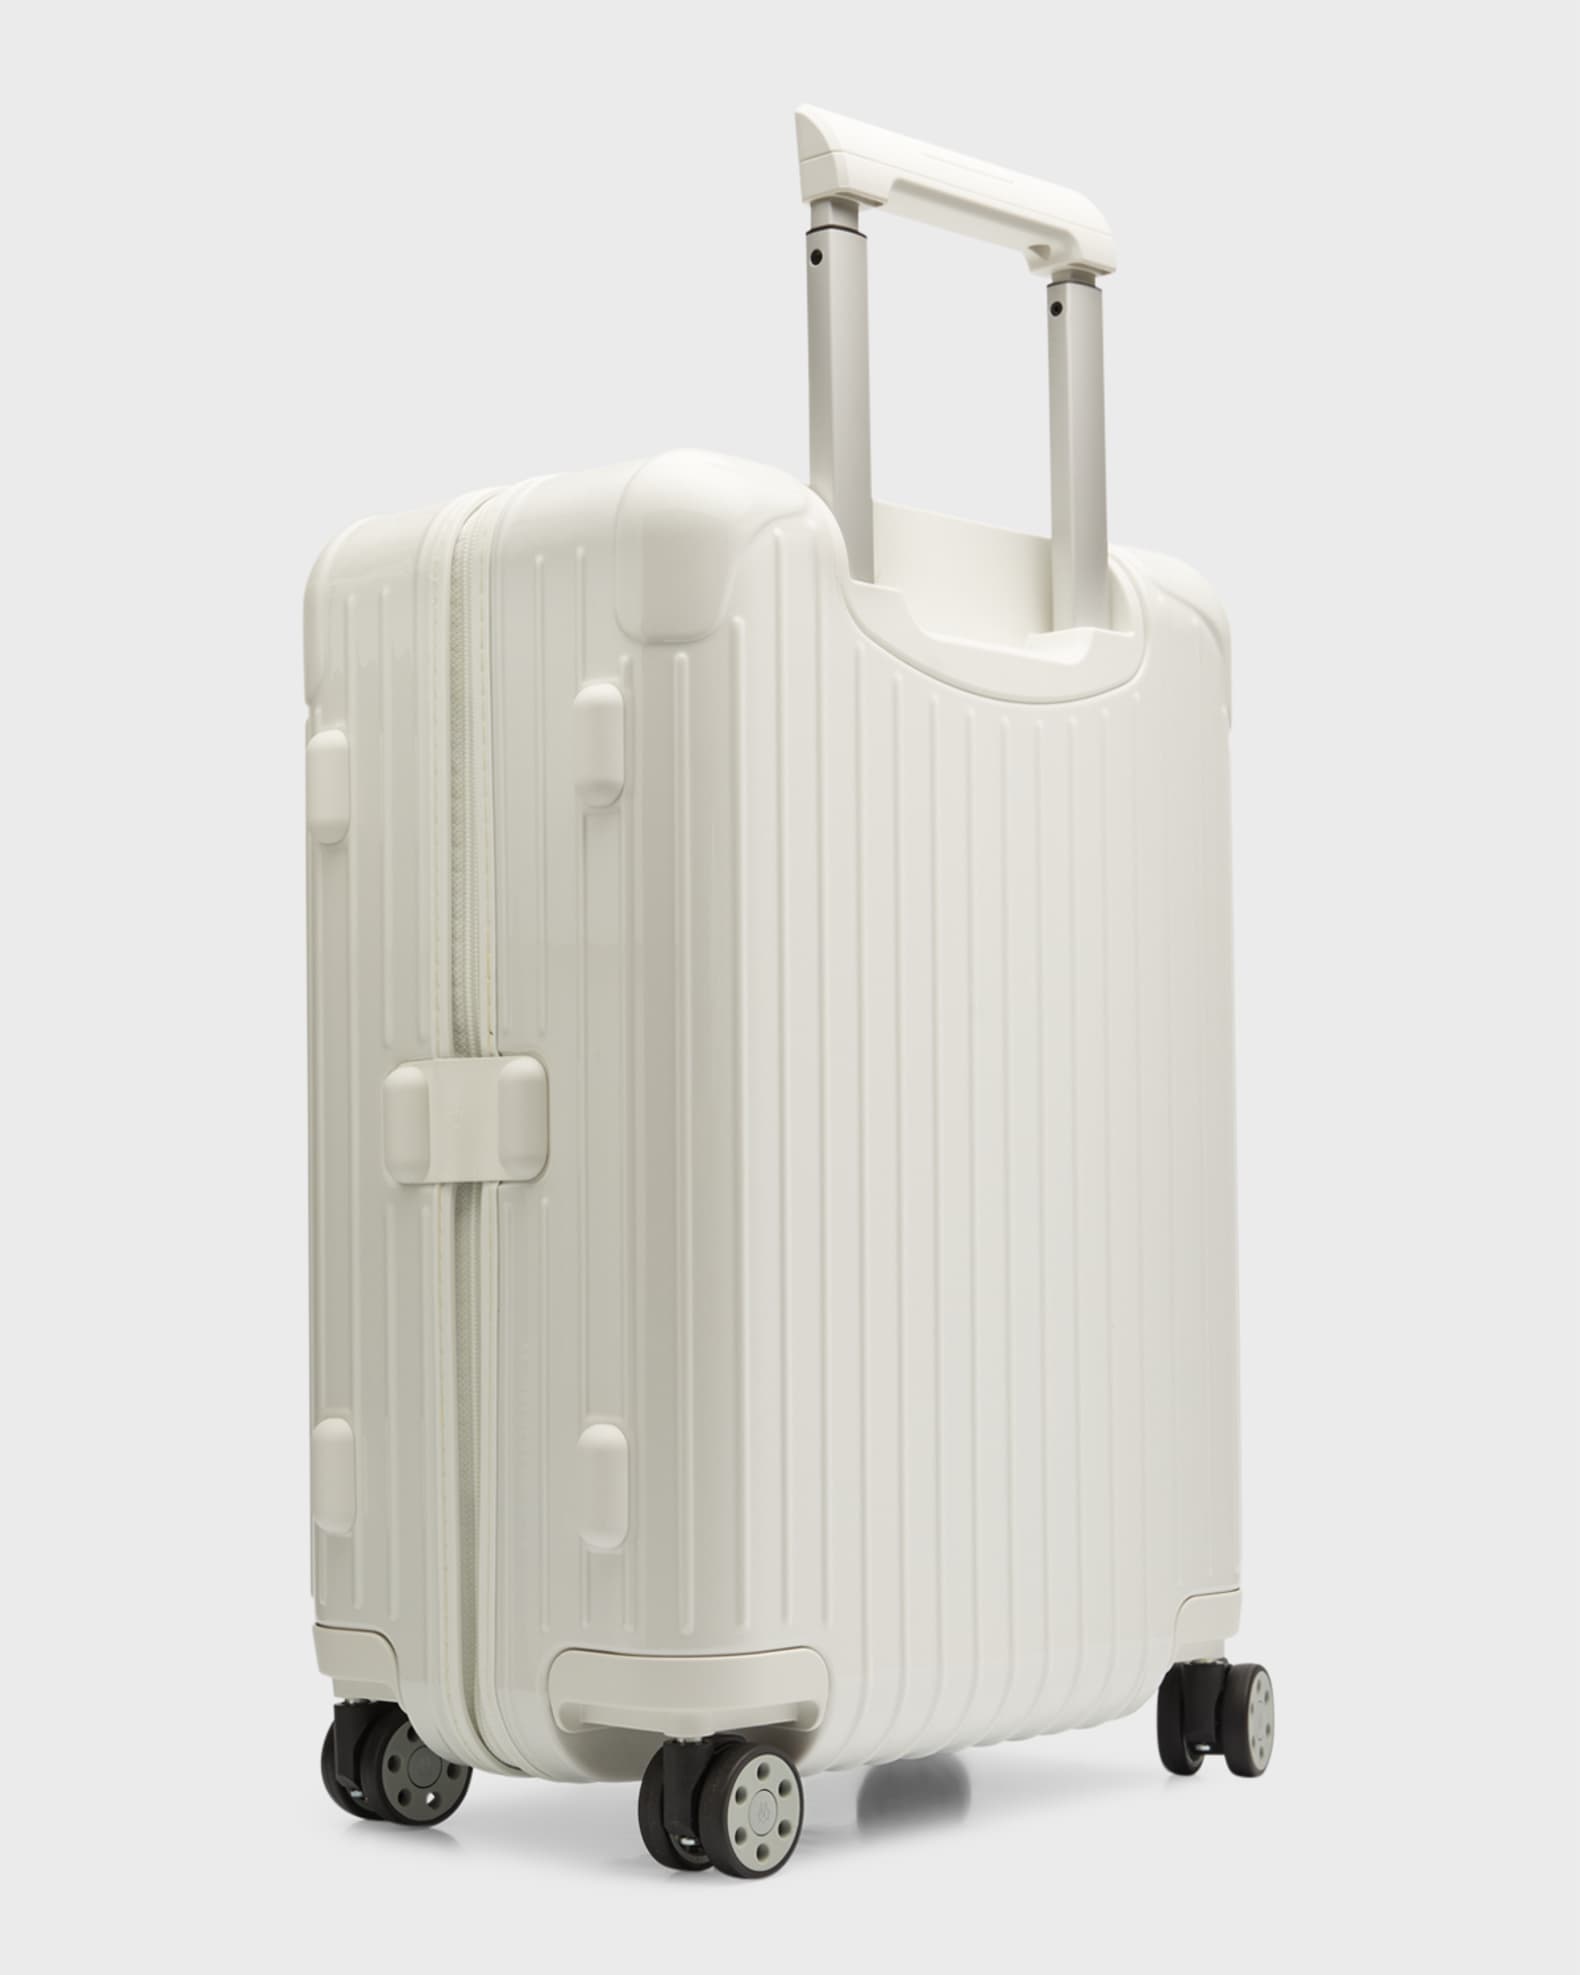 RIMOWA ESSENTIAL Cabin Suitcase Luggage Mango Orange 36L 832.53